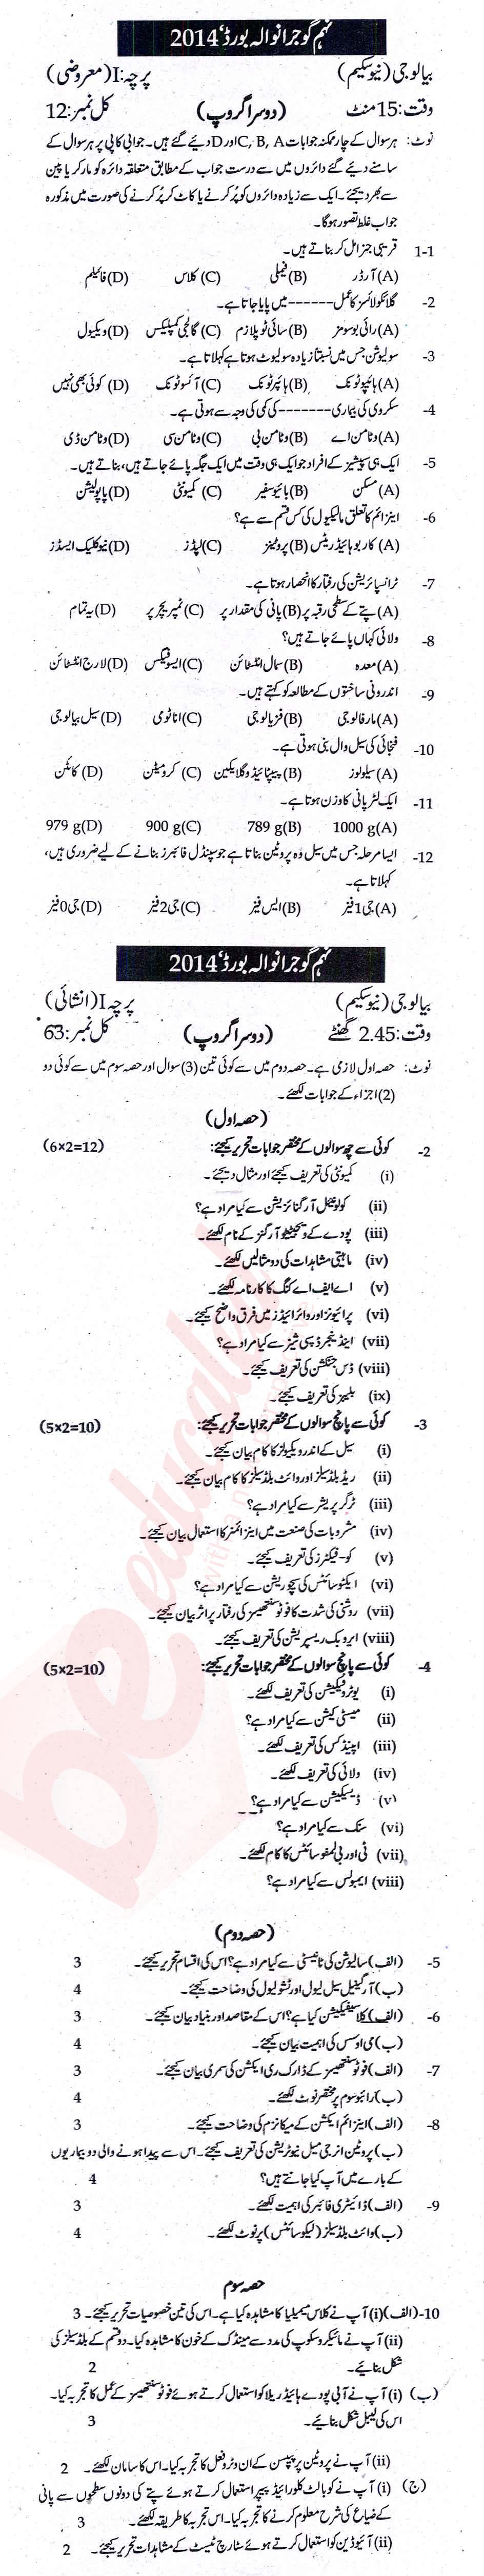 Biology 9th Urdu Medium Past Paper Group 2 BISE Gujranwala 2014